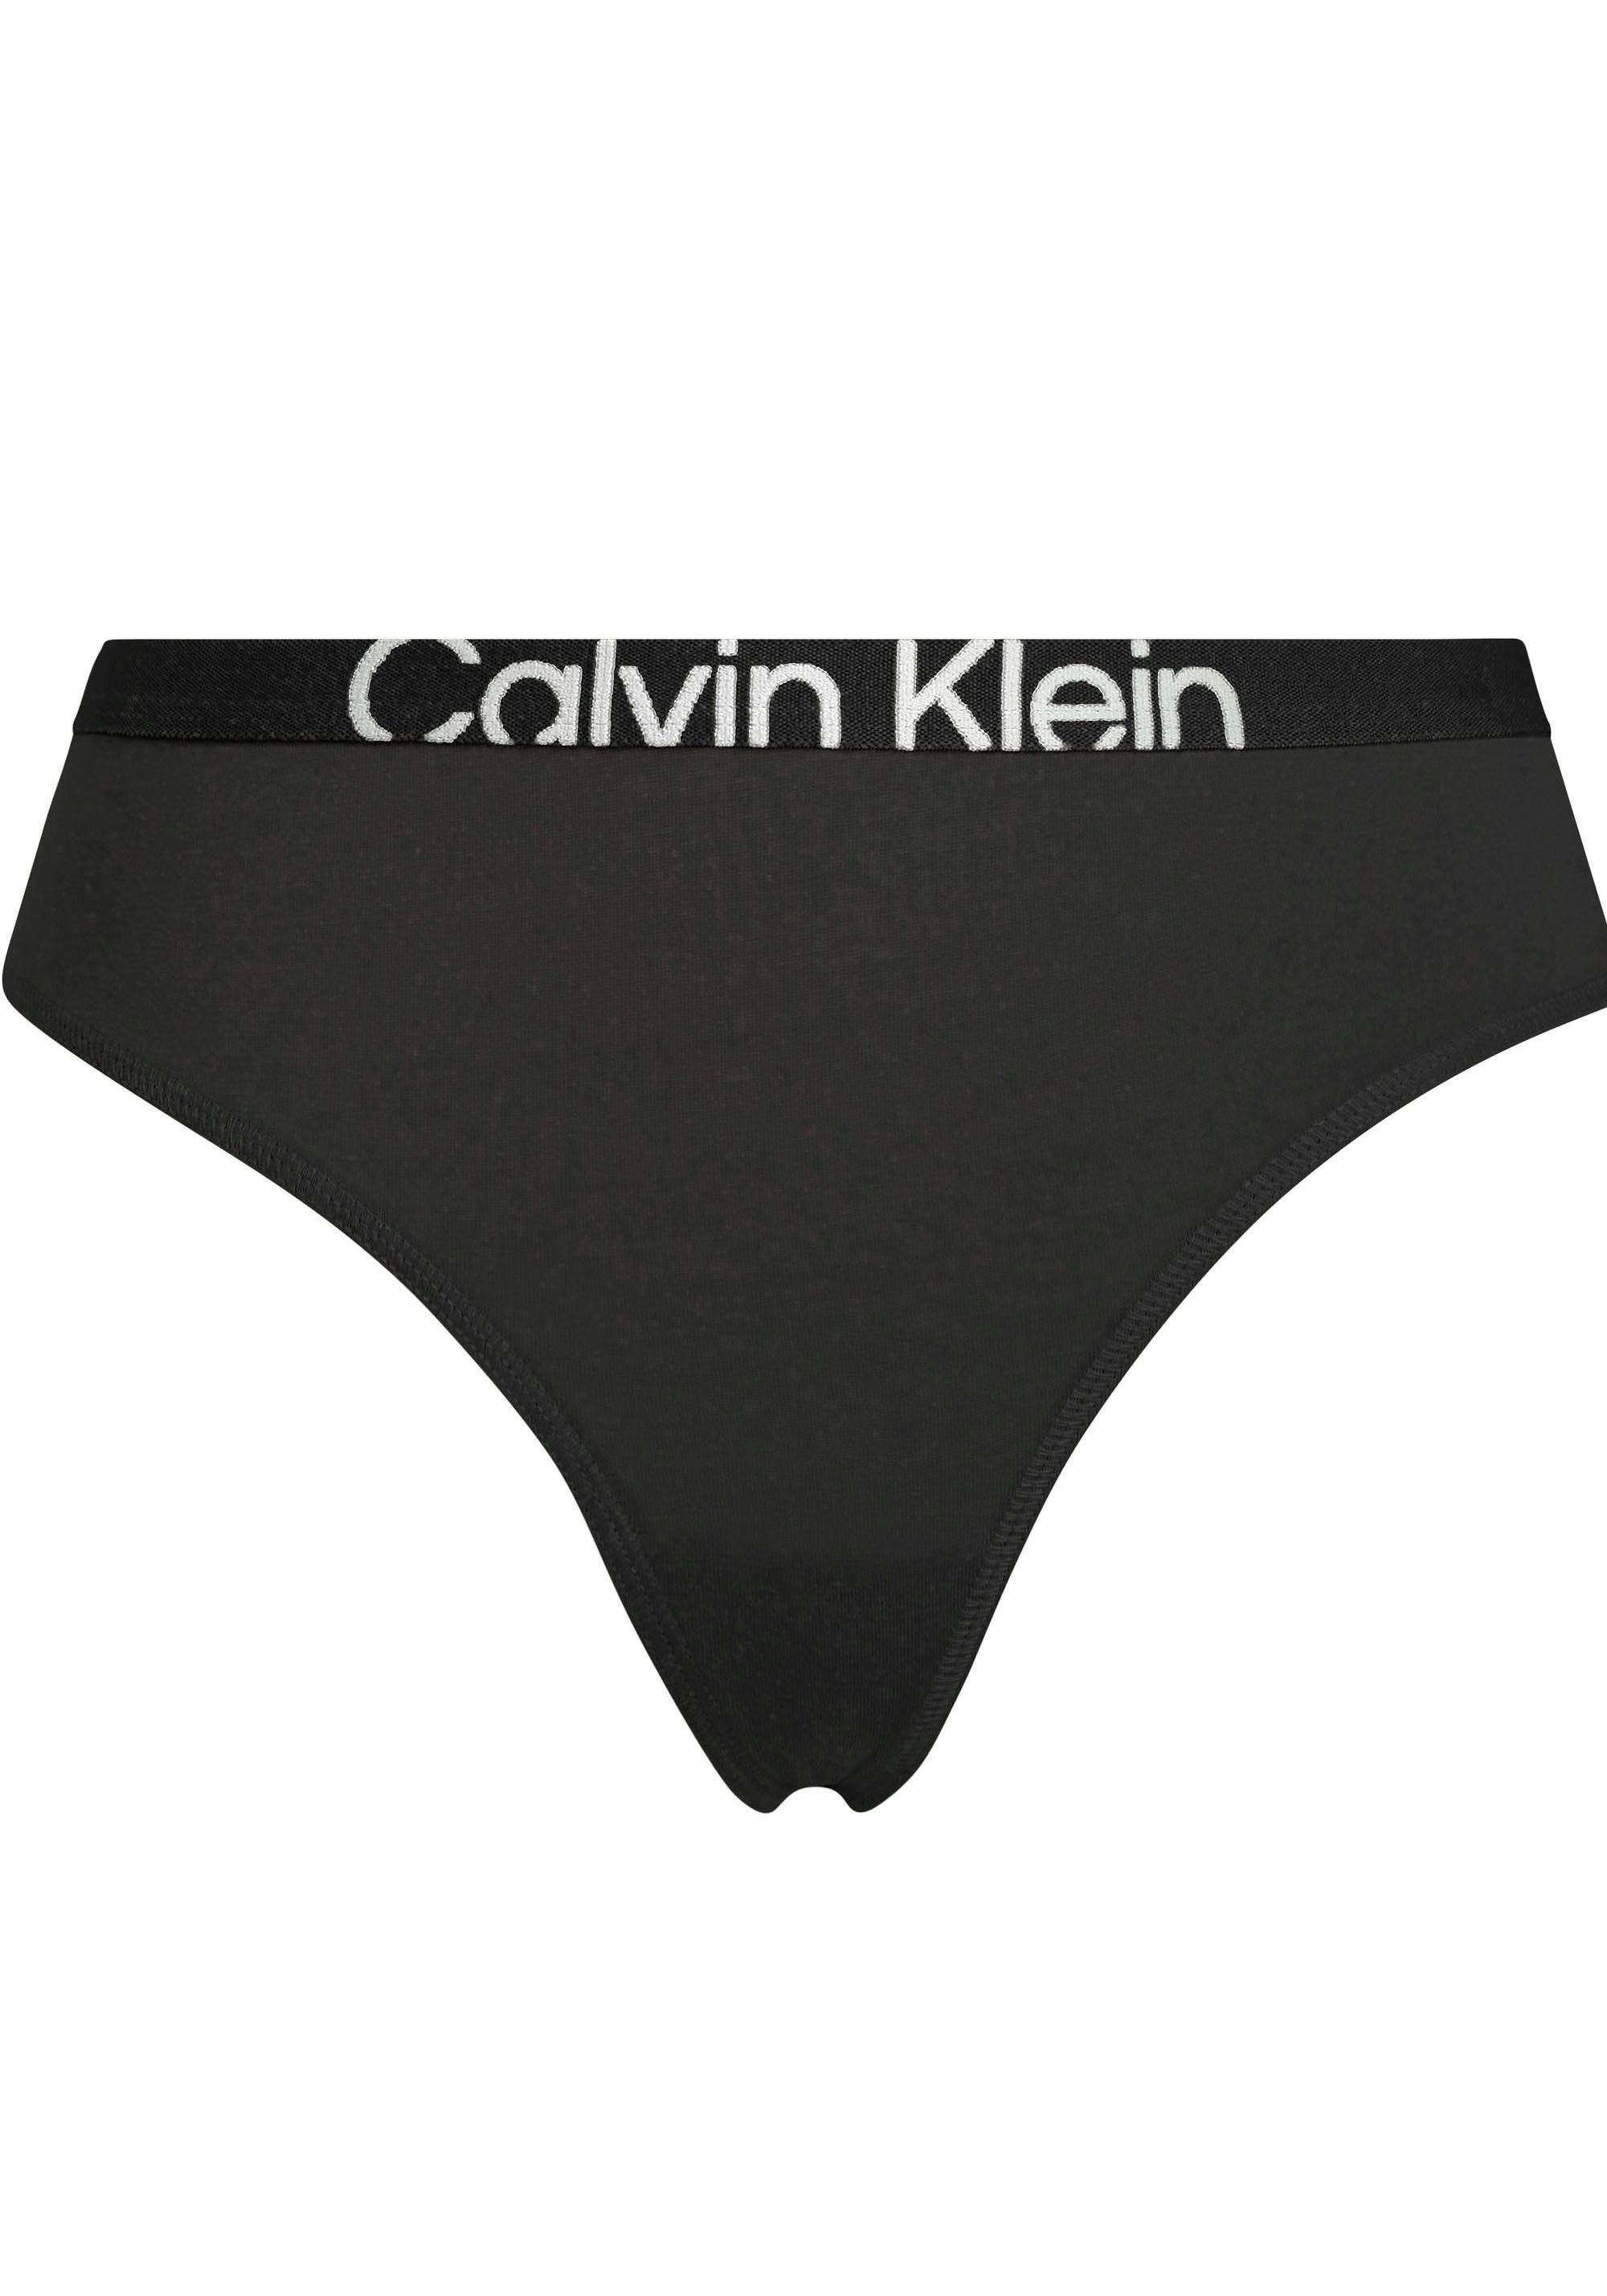 Underwear mit BLACK/SUNNY_LIME T-String Klein MODERN Bund Calvin THONG am CK-Logo